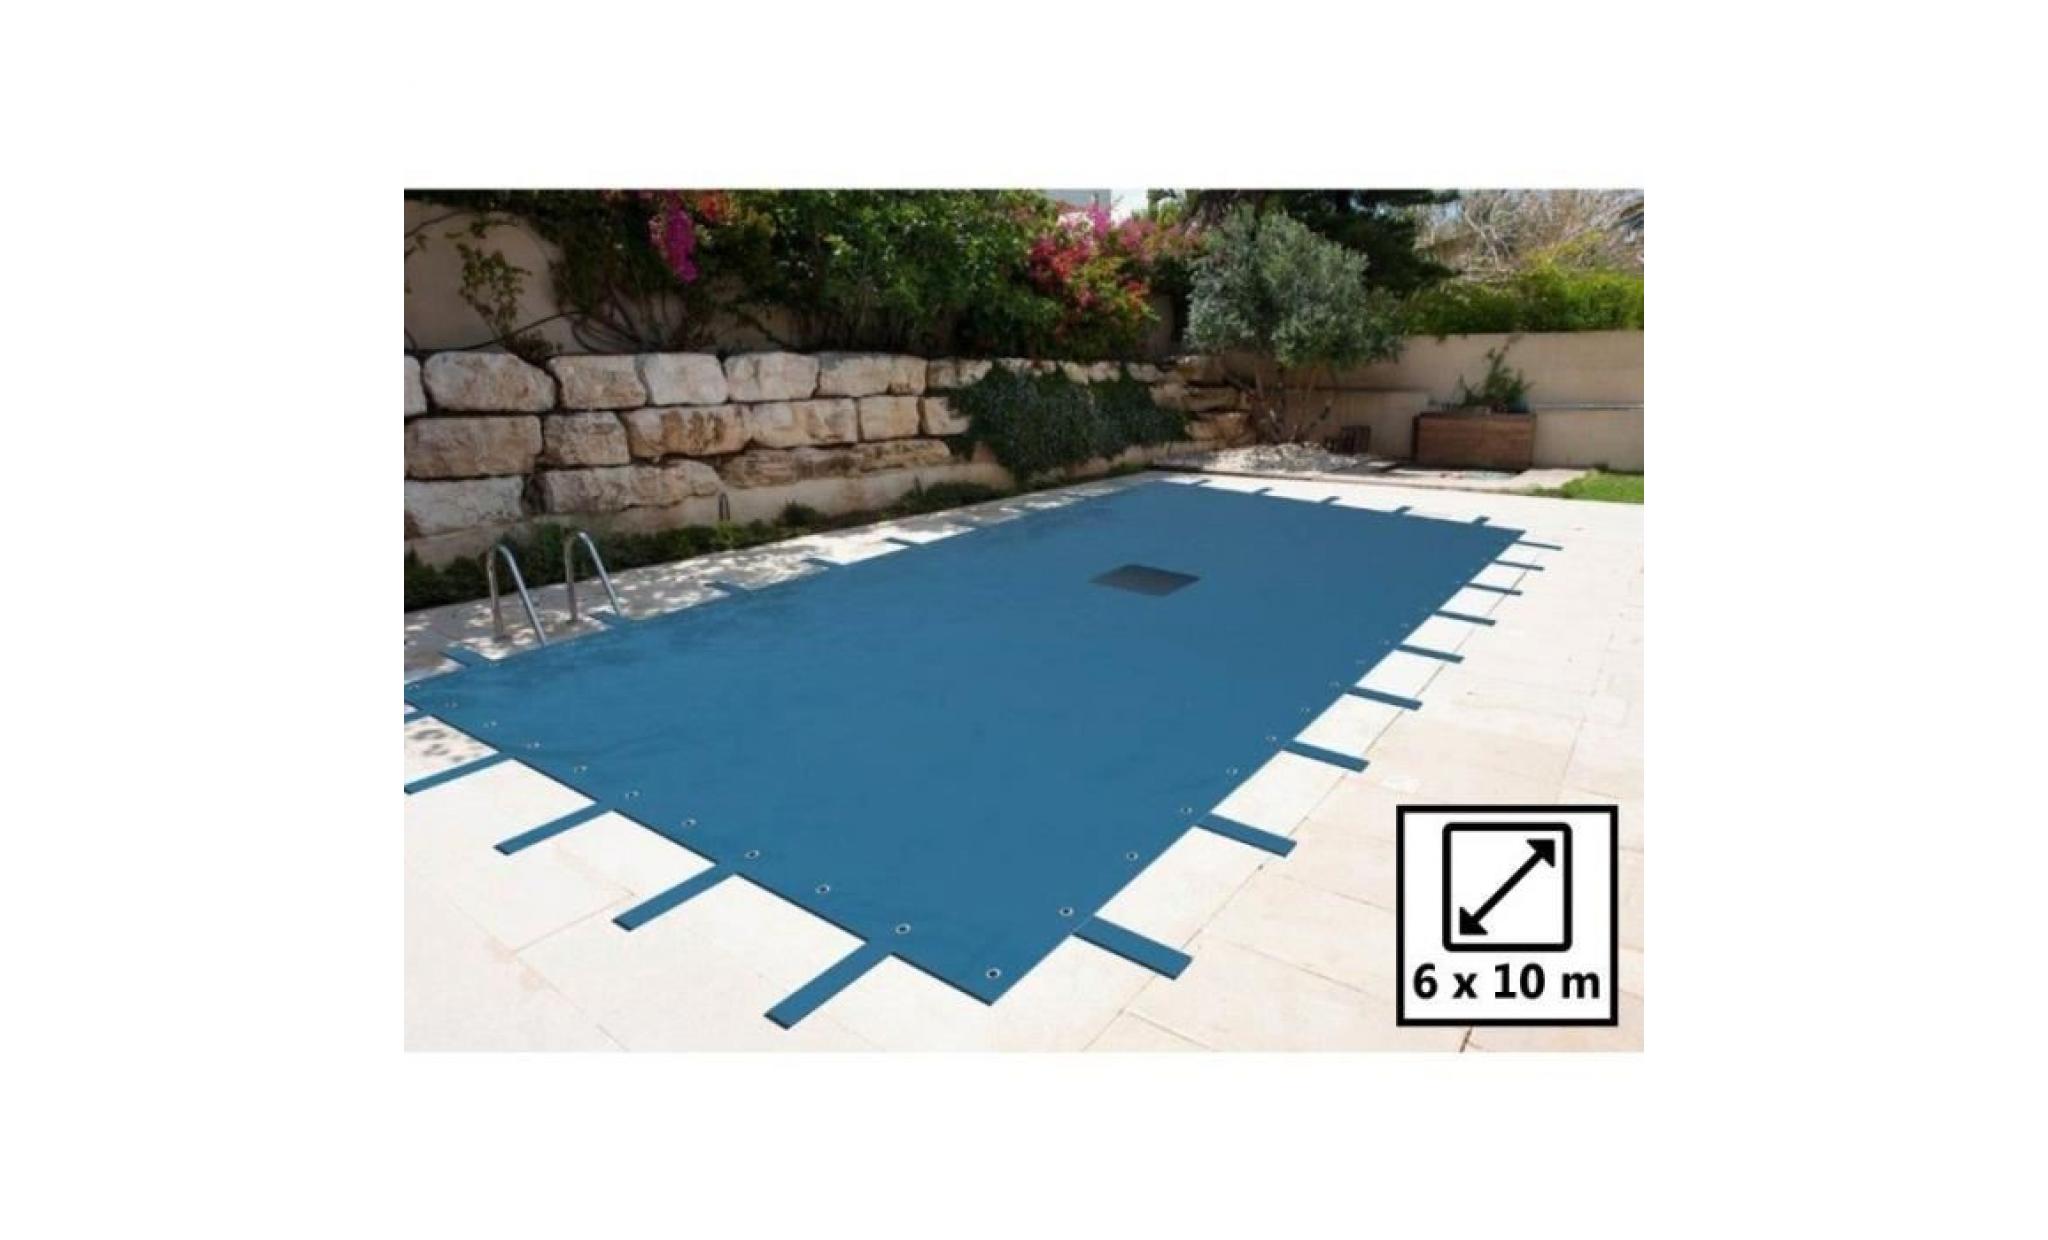 bâche piscine rectangulaire 6x10m   couleur bleue marine   140g/m2 avec filet d'écoulement pas cher